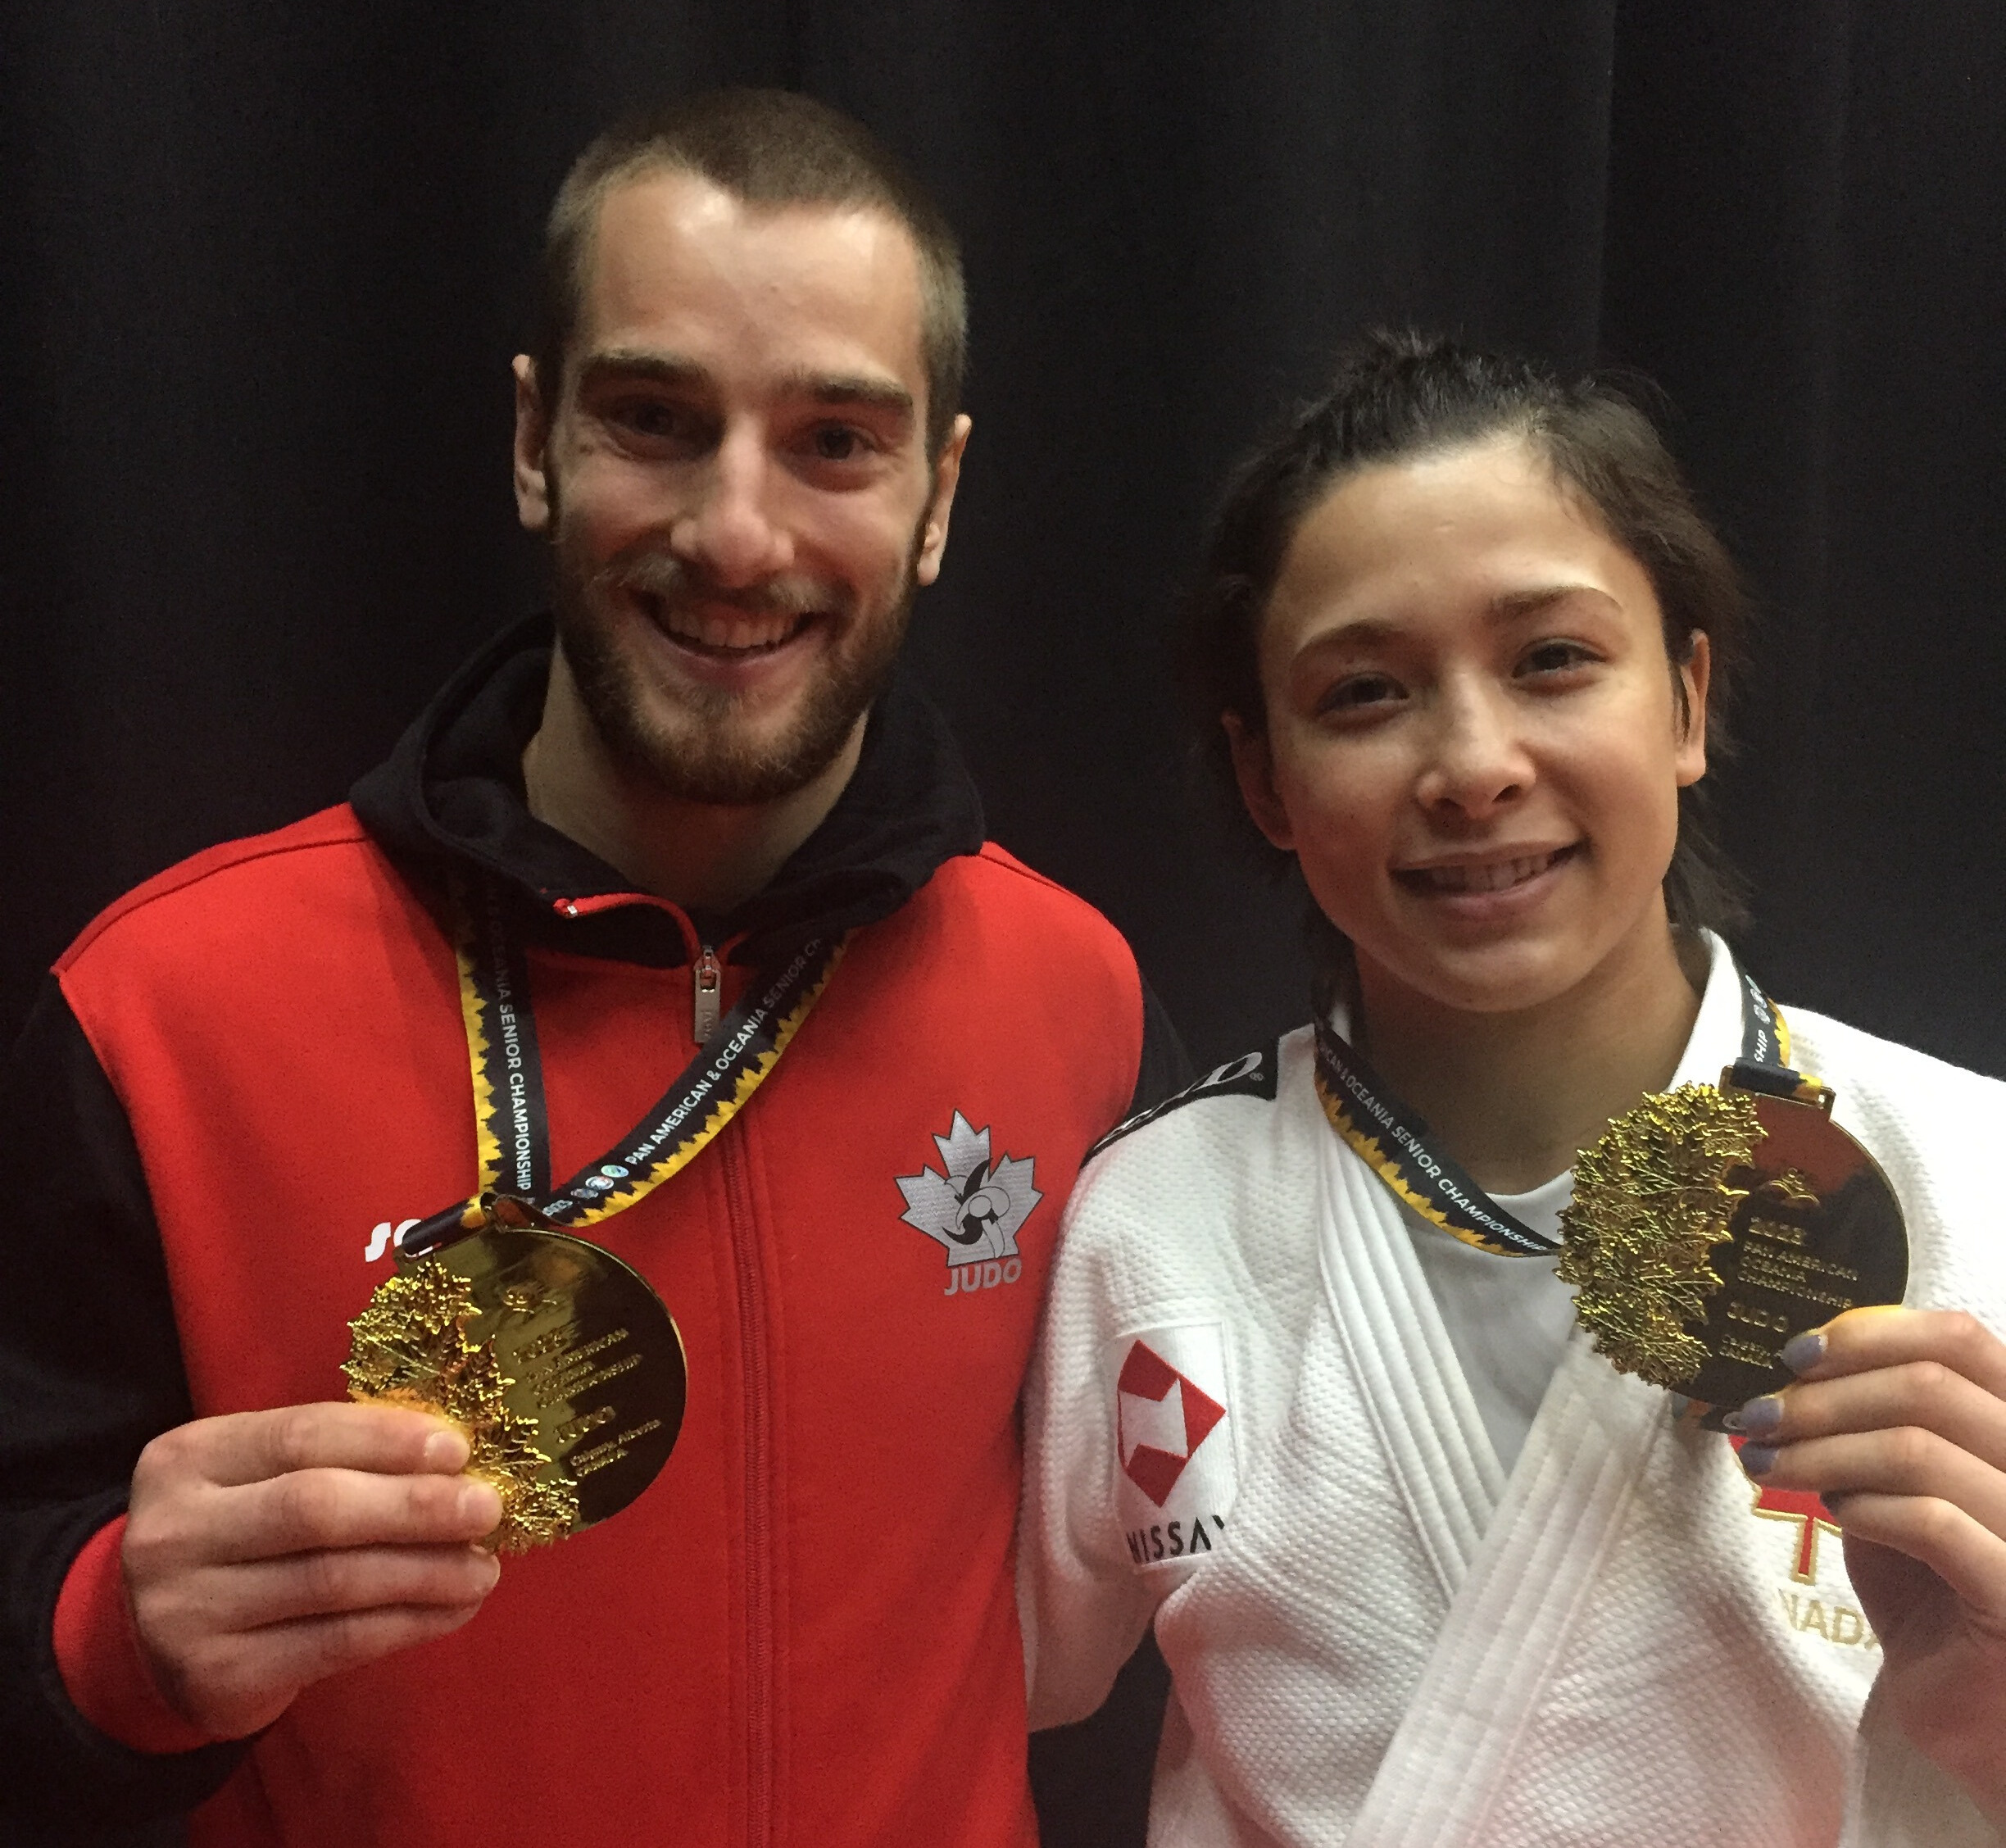 Deux athlètes canadiens souriants avec leur médaille d'or.